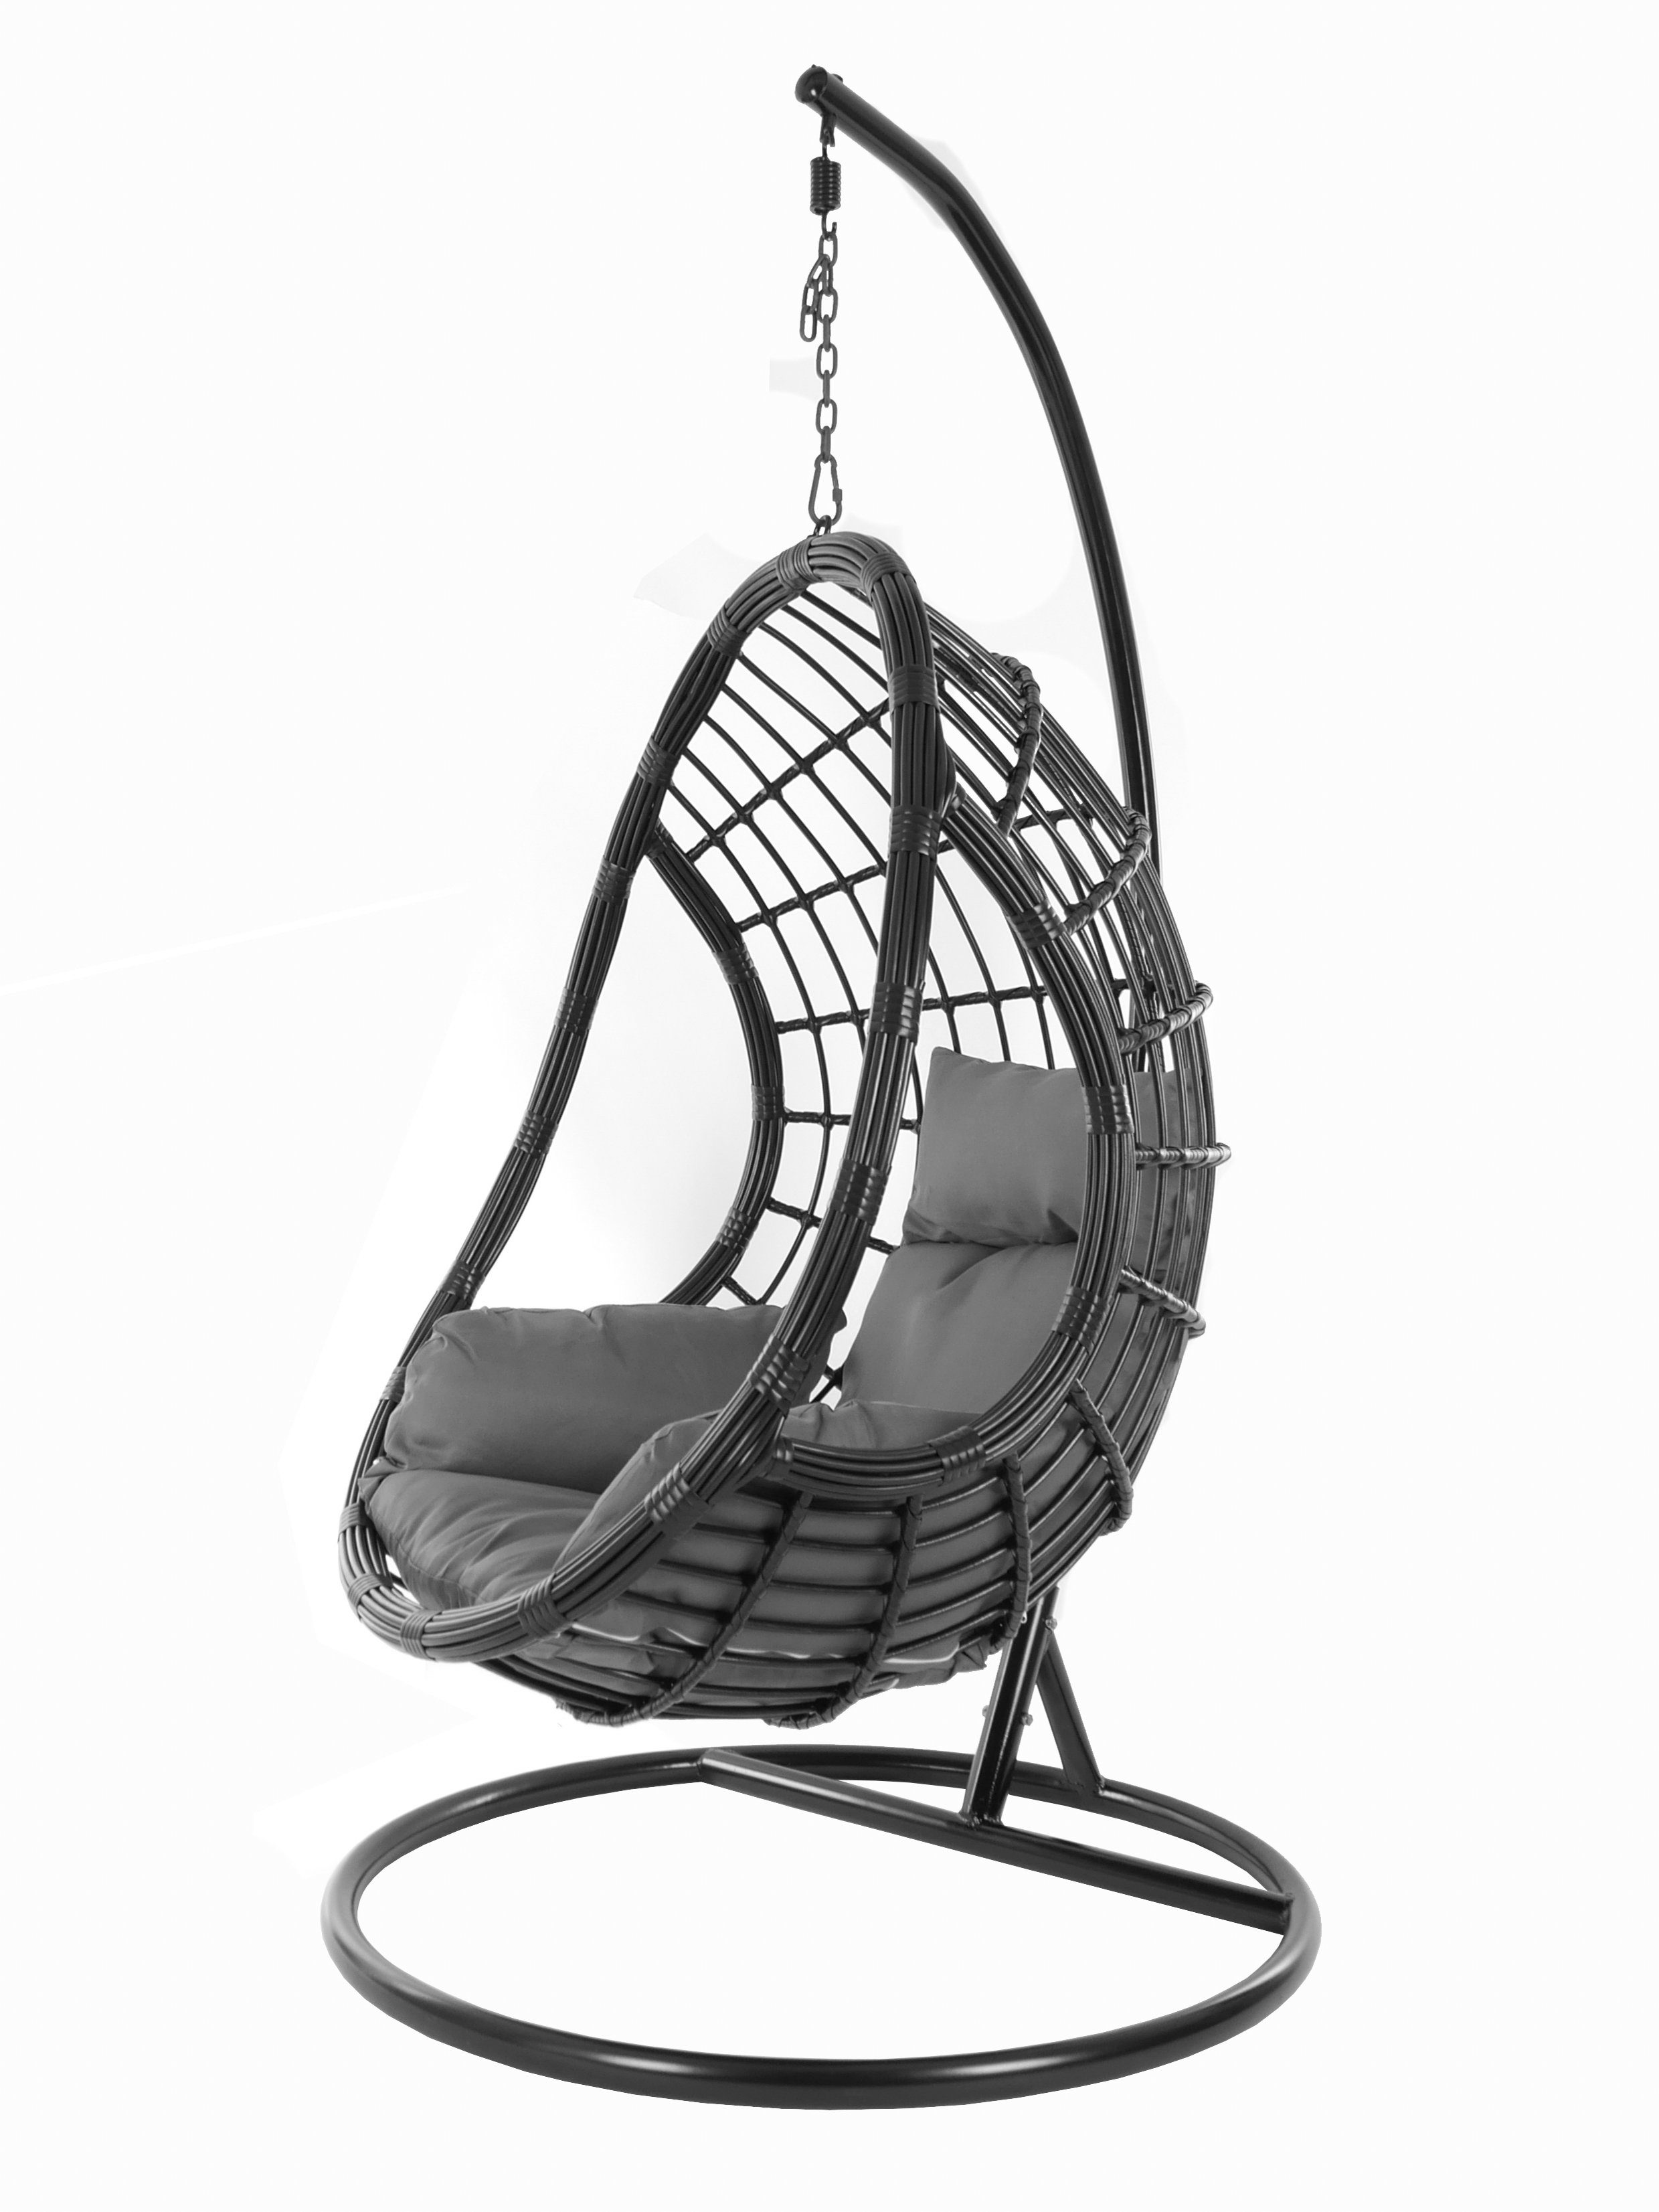 KIDEO Hängesessel PALMANOVA black, Schwebesessel, Swing Chair, Hängesessel mit Gestell und Kissen, Nest-Kissen dunkelgrau (8999 shadow) | Hängesessel